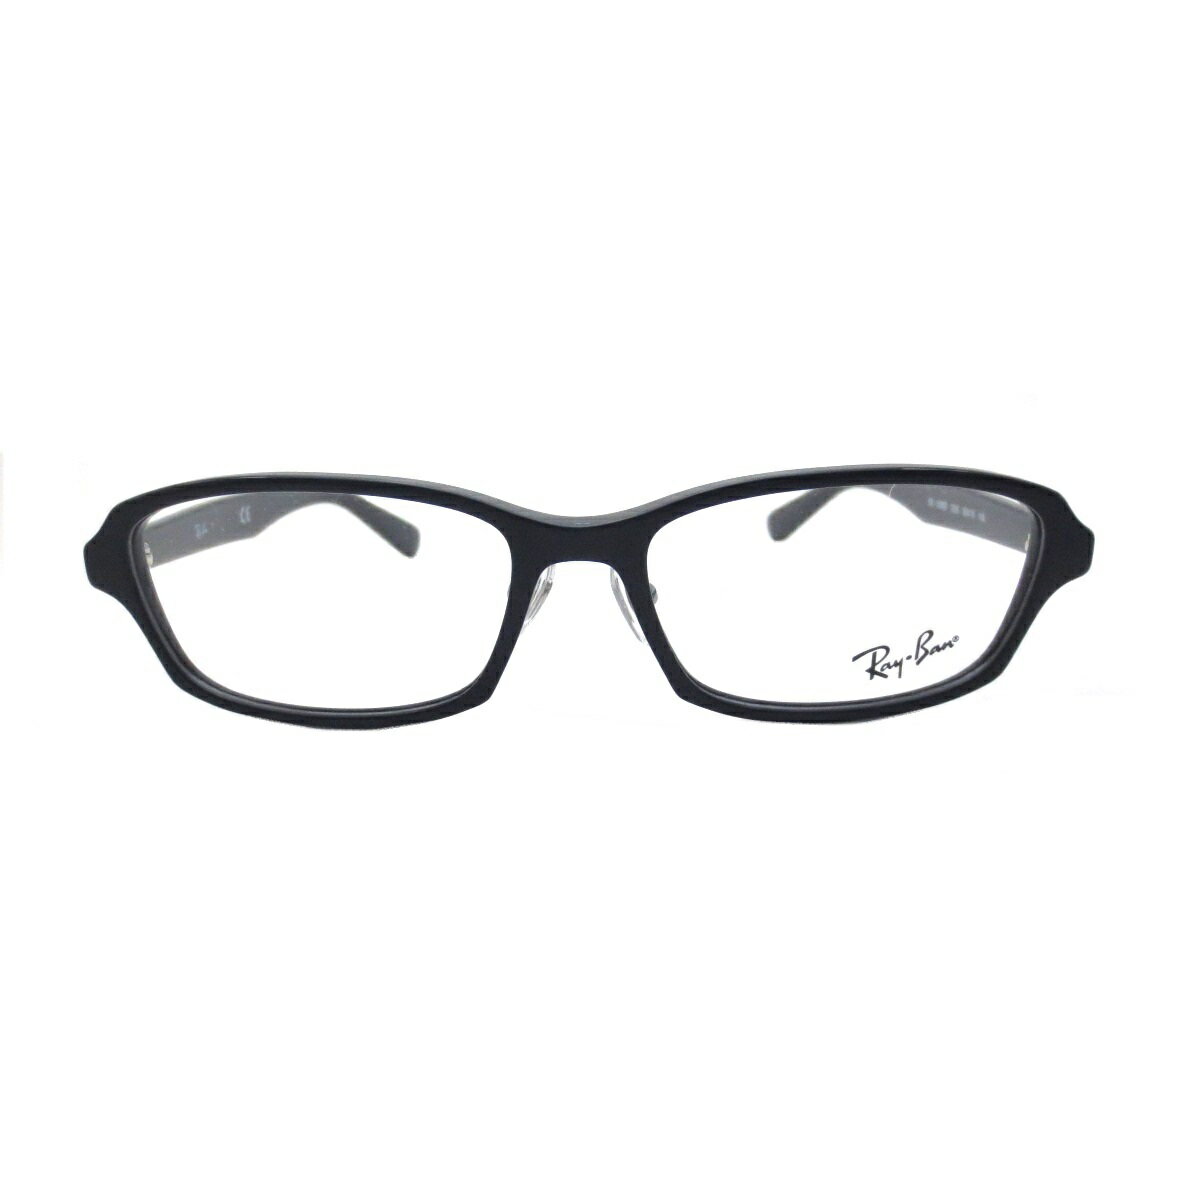 レイバン Ray-Ban 老眼鏡 シニアグラス メガネ (レイバン Ray-Ban）RX5385D 2000(サイズ55)UVカットレンズ付き クリアレンズ 【あす楽対応】 2